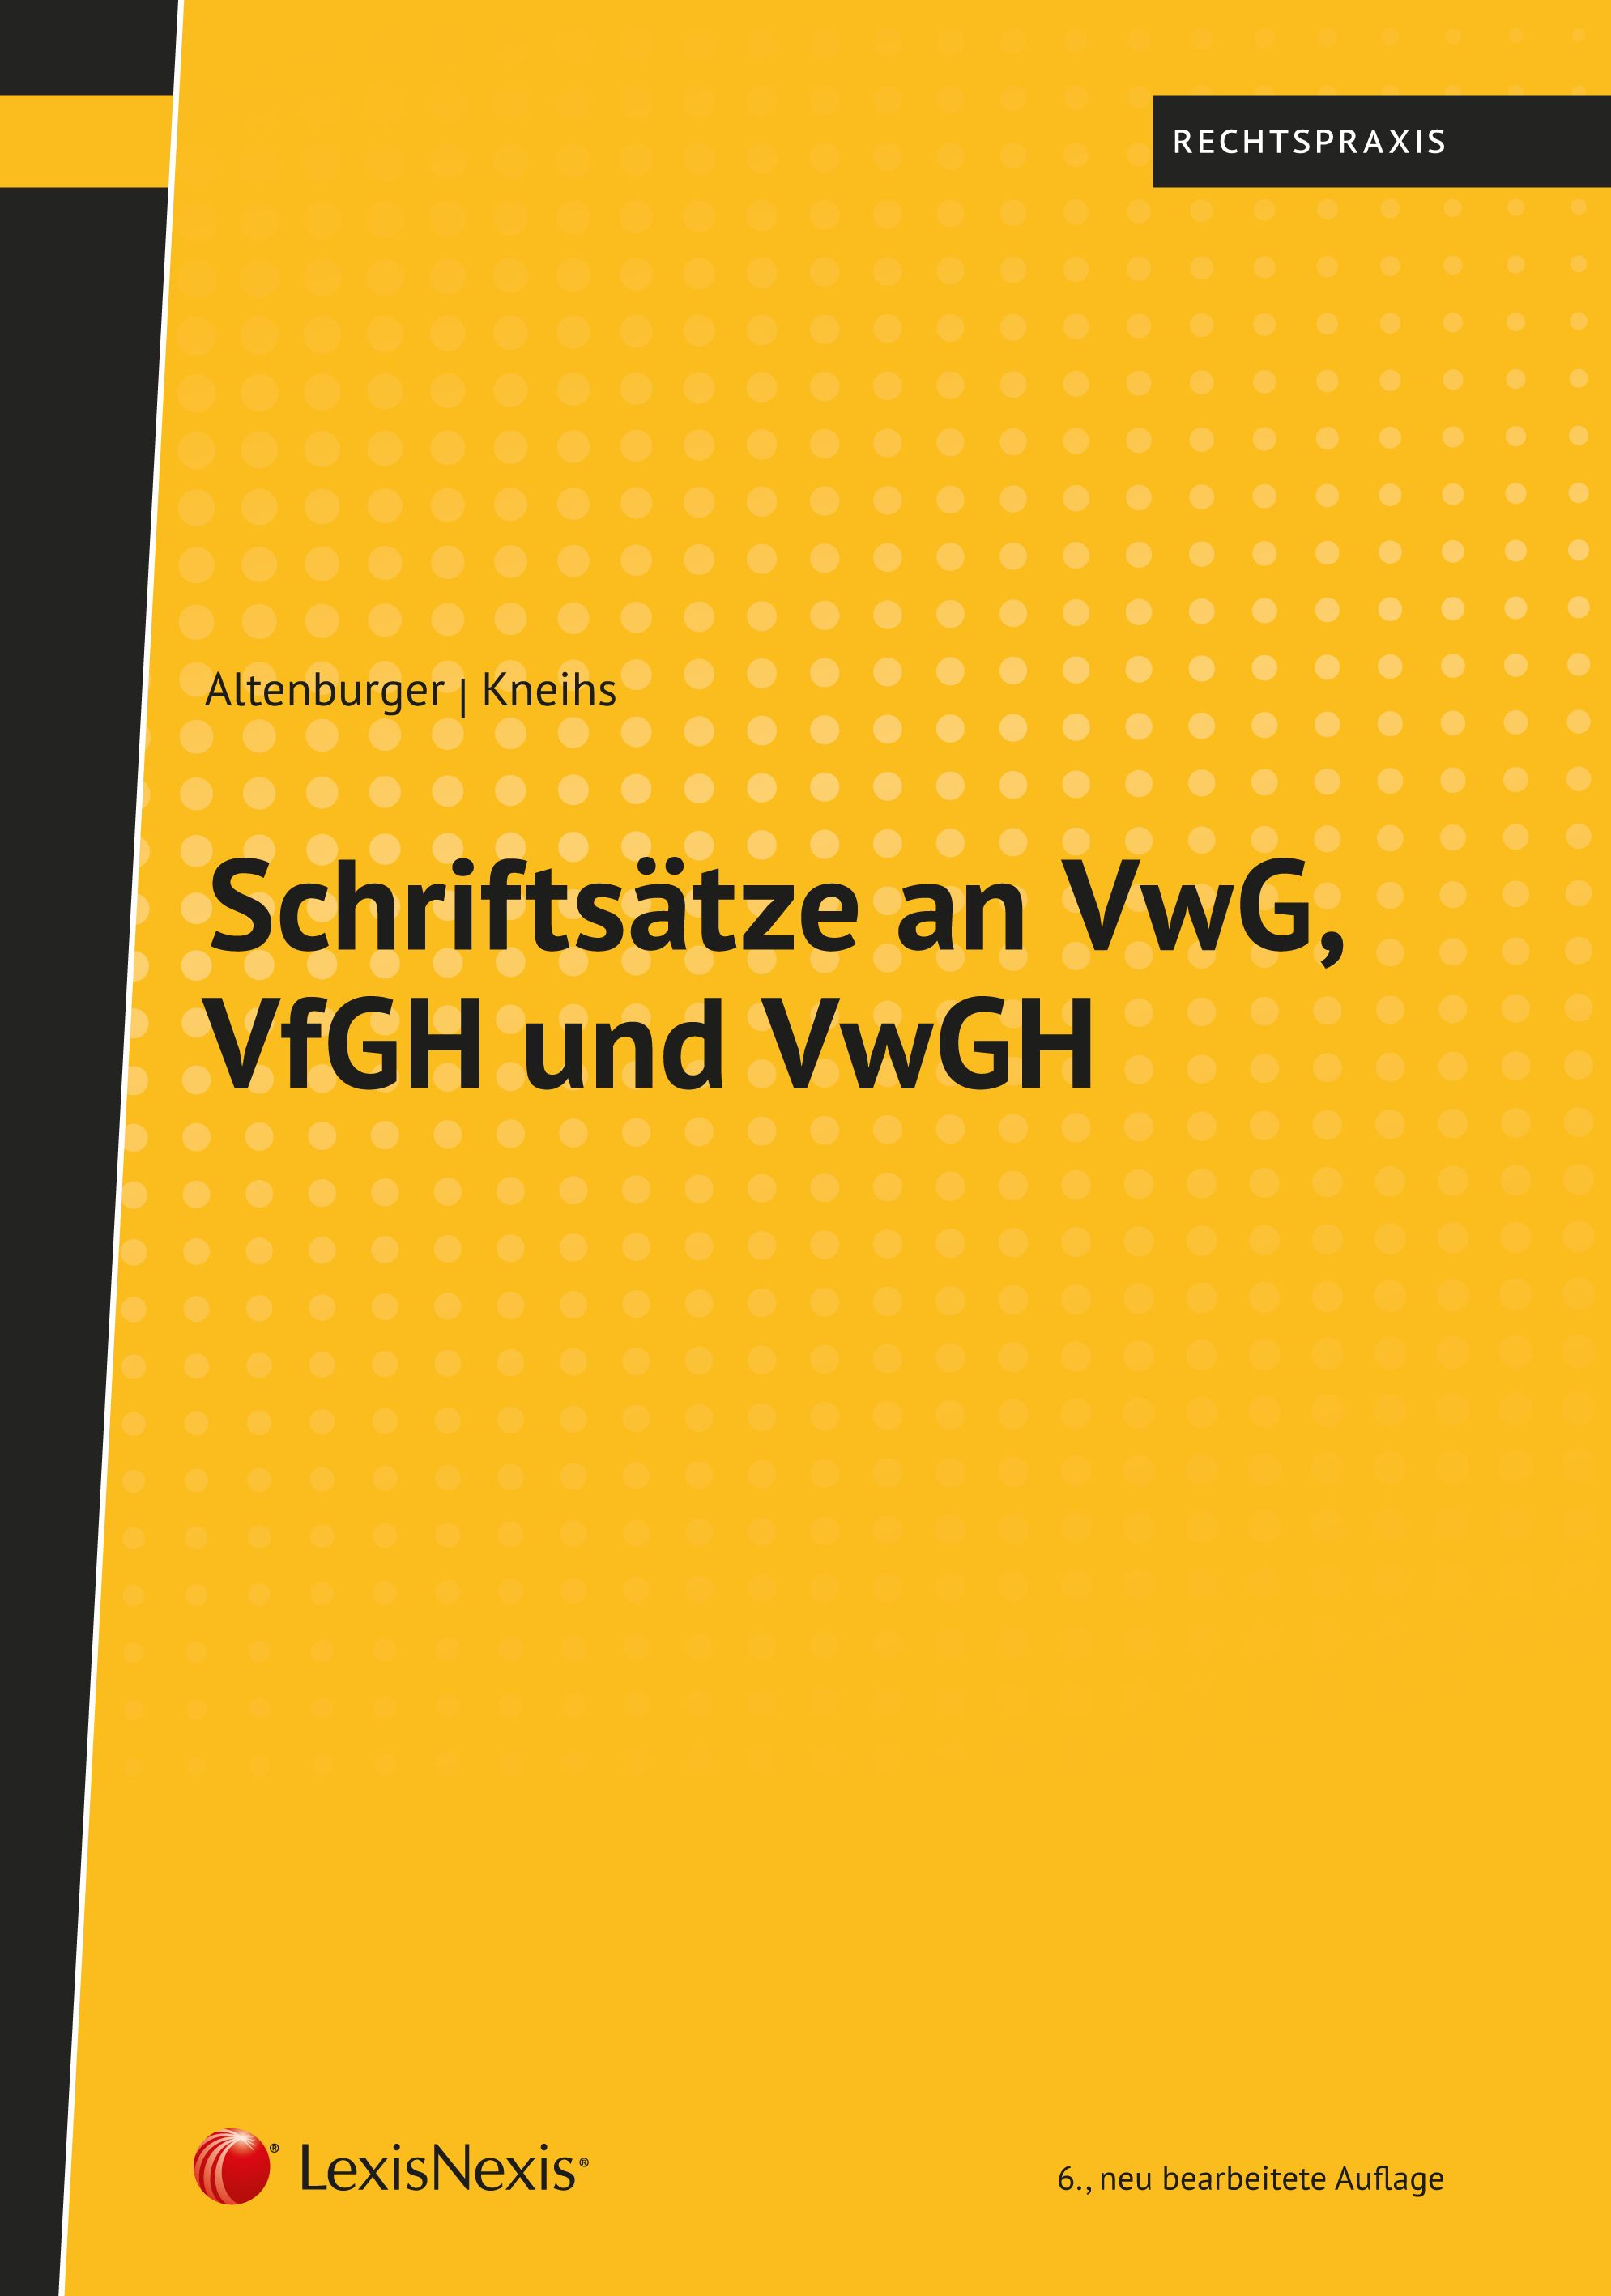 Altenburger/Kneihs, Schriftsätze an VwG, VfGH und VwGH (6. Auflage, 2018)